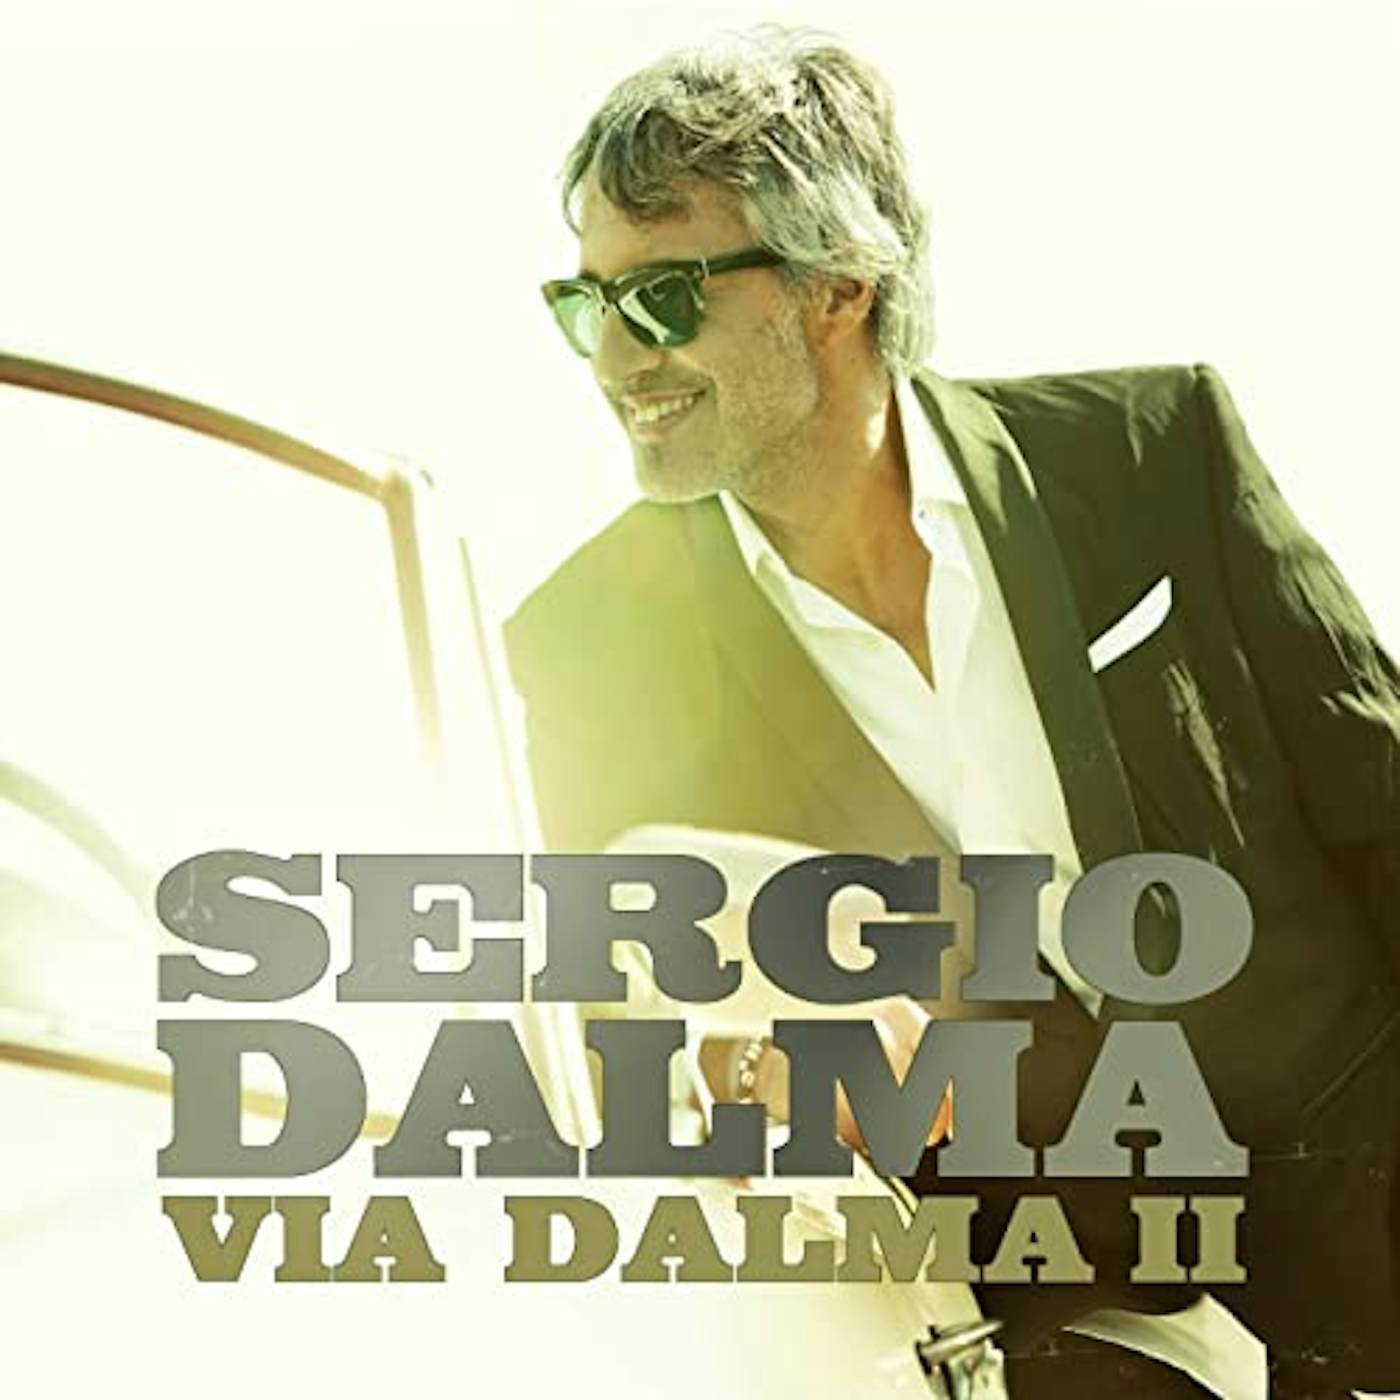 Sergio Dalma Via Dalma II Vinyl Record